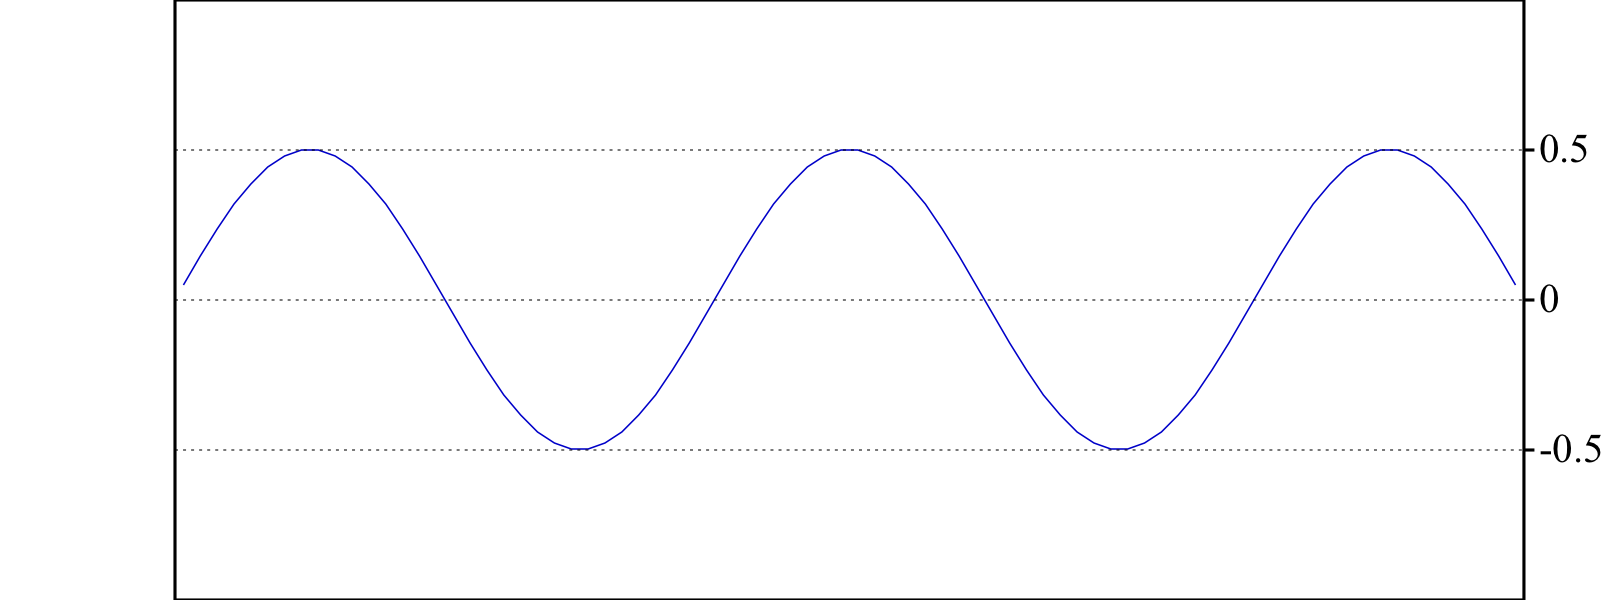 Representación gráfica de una onda simple